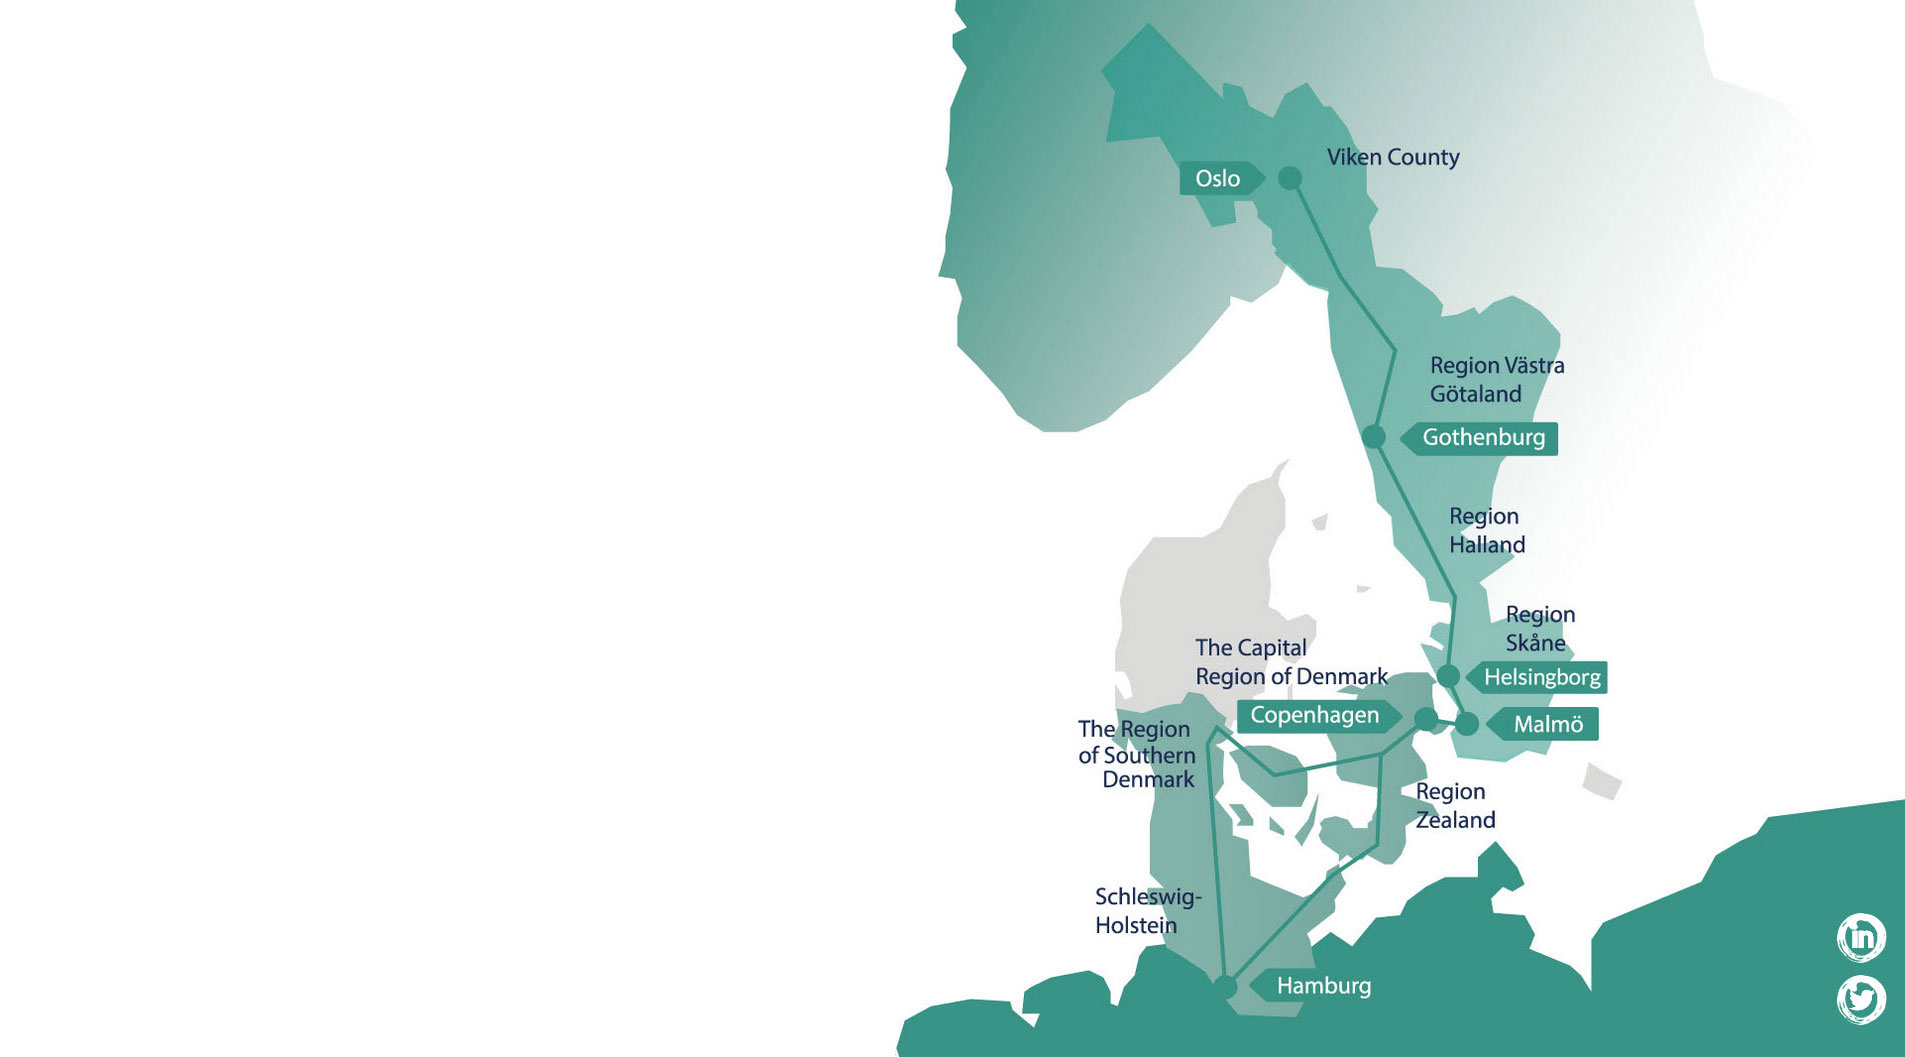 Karta över projektet STRING som samlar regioner och större städer i det geografiska området från Hamburg i söder till Oslo i norr.